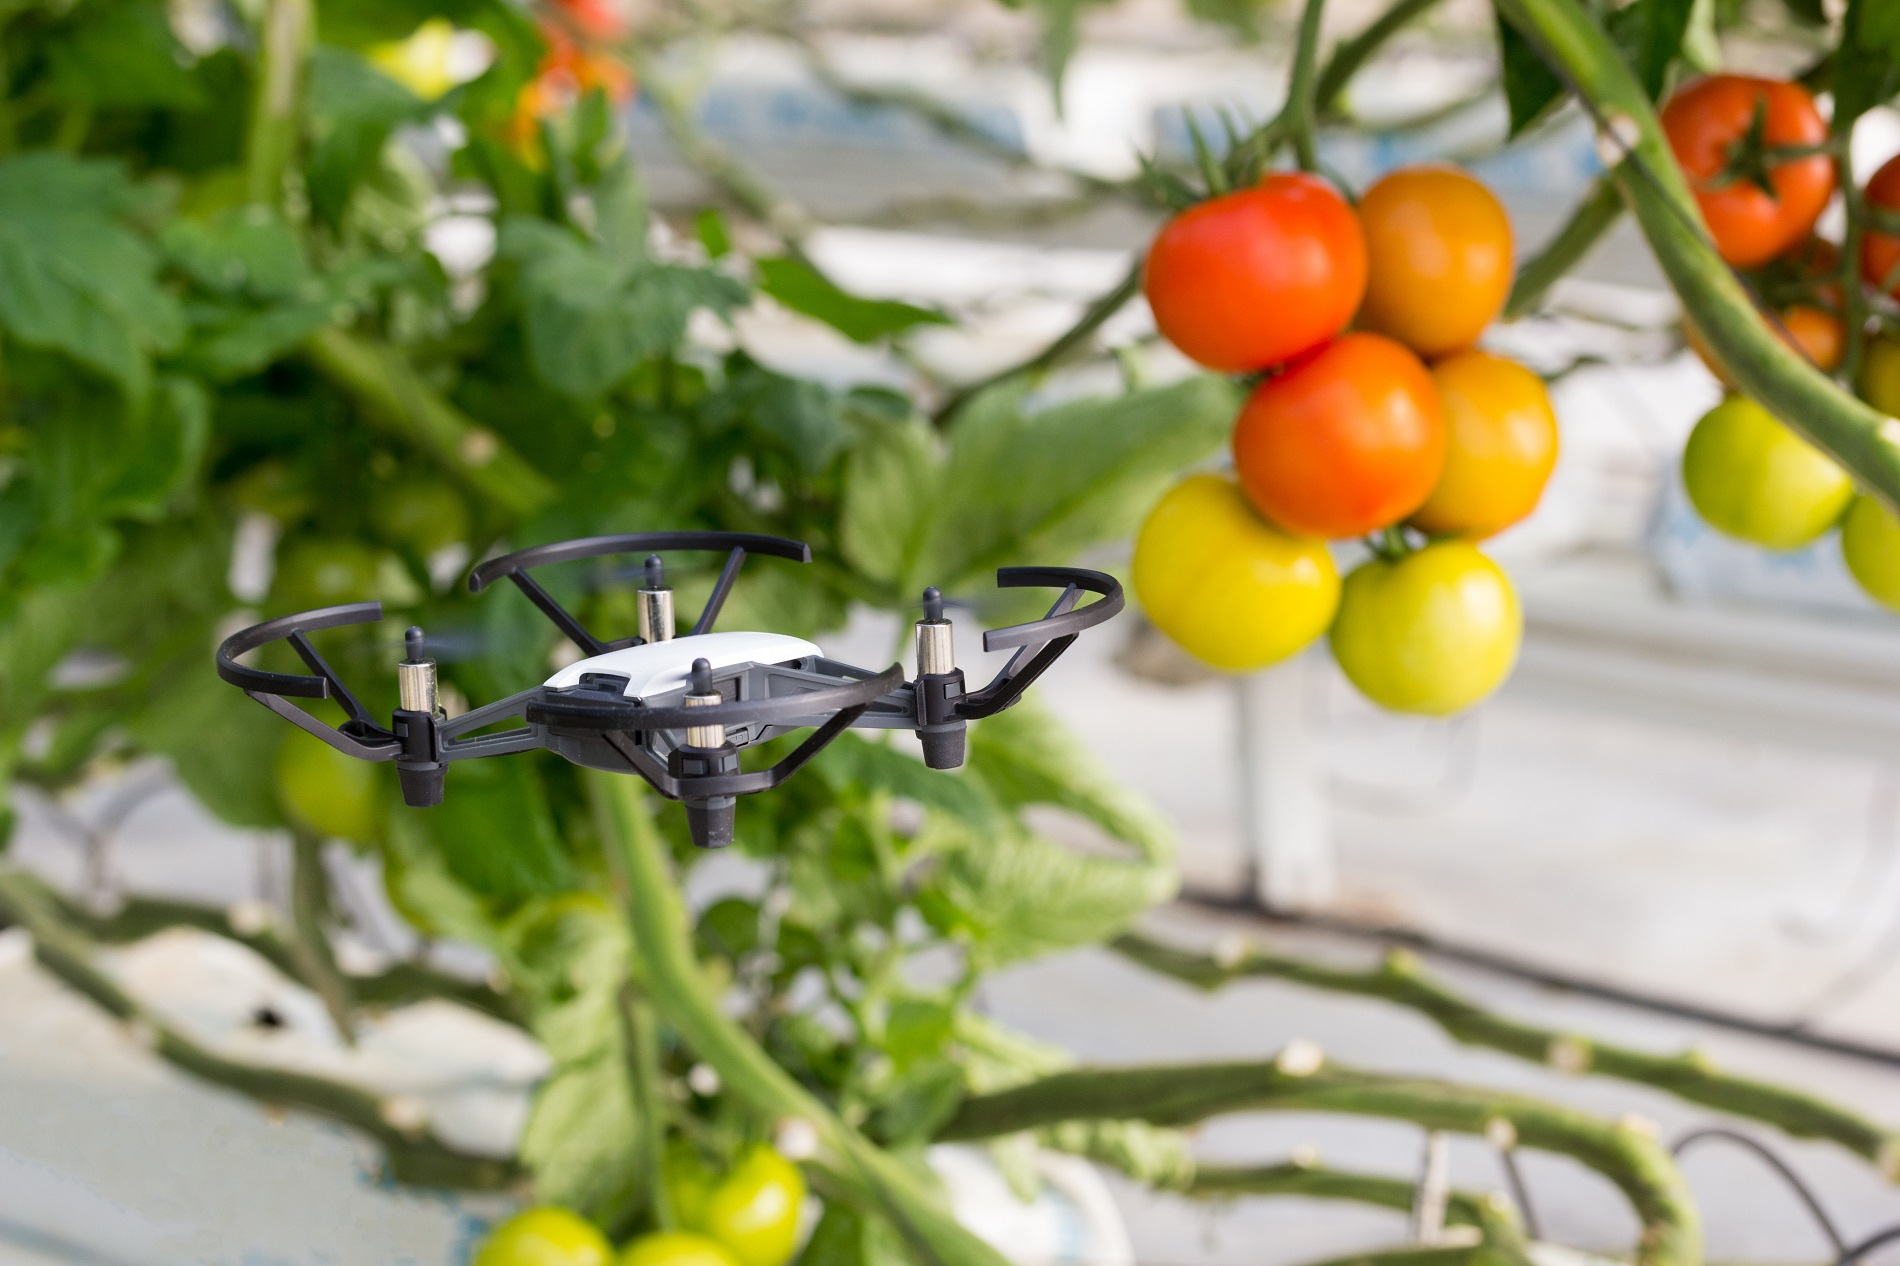 ¿Qué puede aportar el uso de drones al desarrollo y modernización de la agricultura?